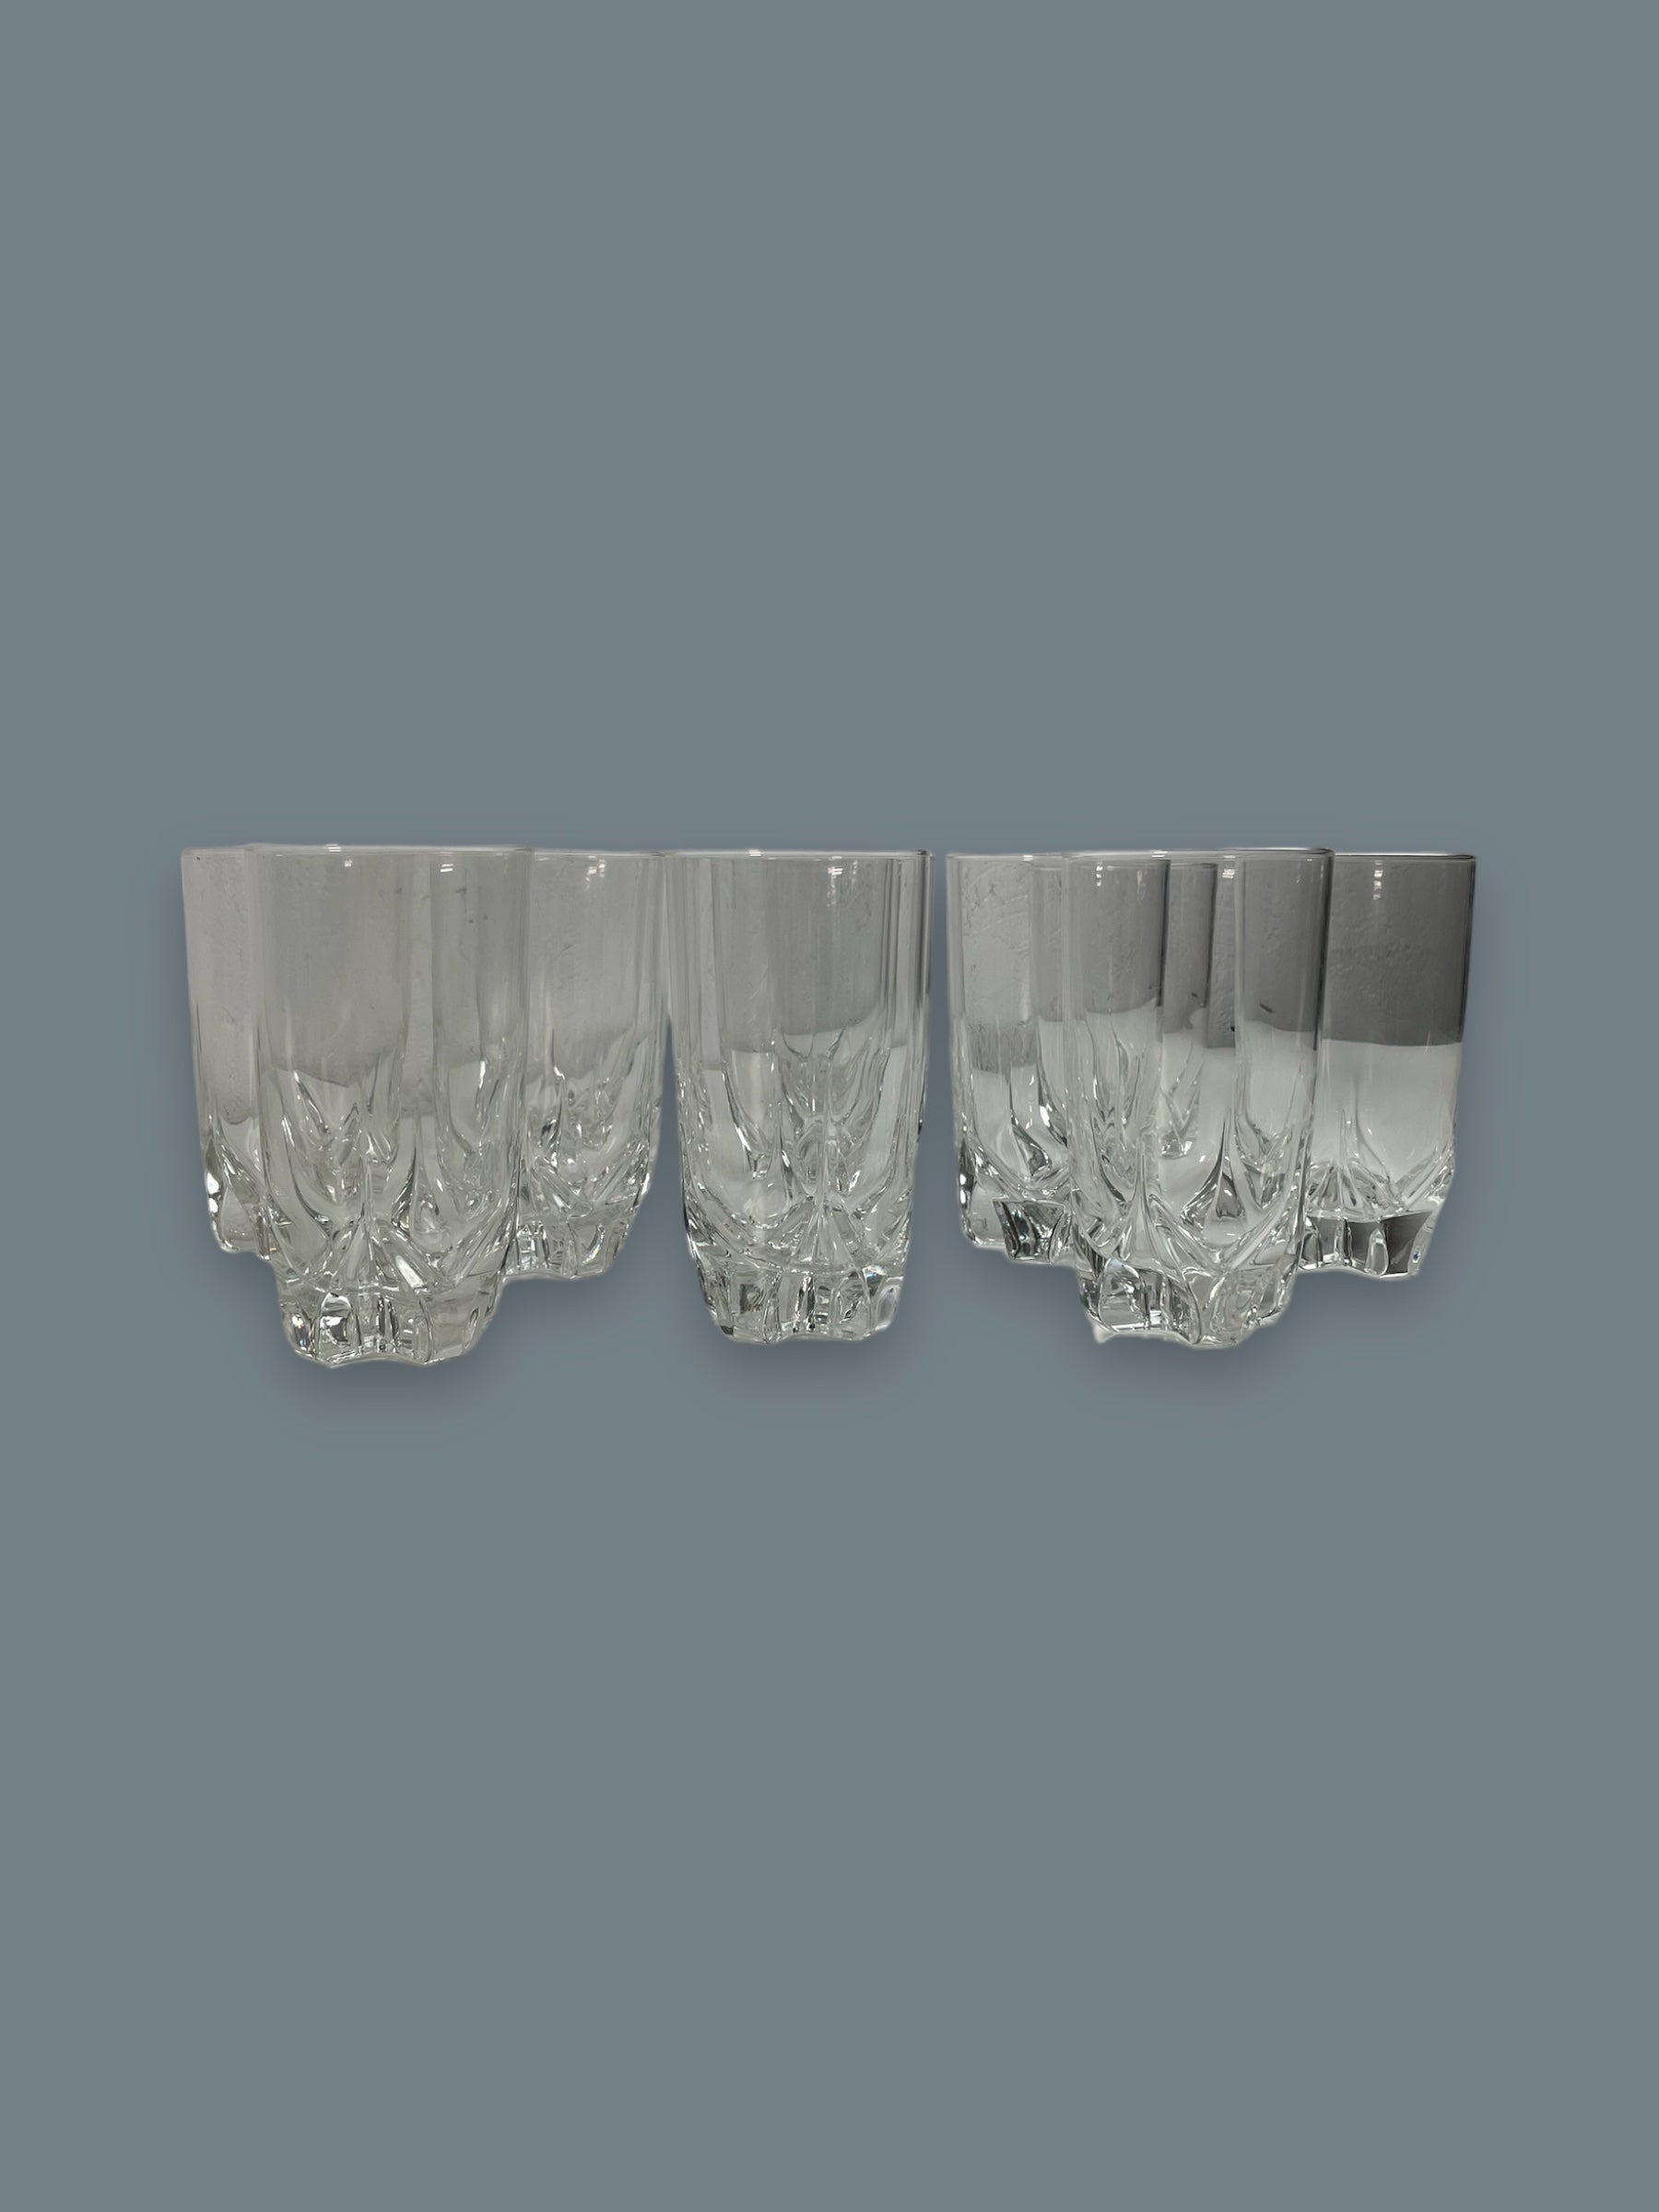 Ensemble exquis de 6 gobelets plats en cristal scandinave Orrefors Excess de 11 oz